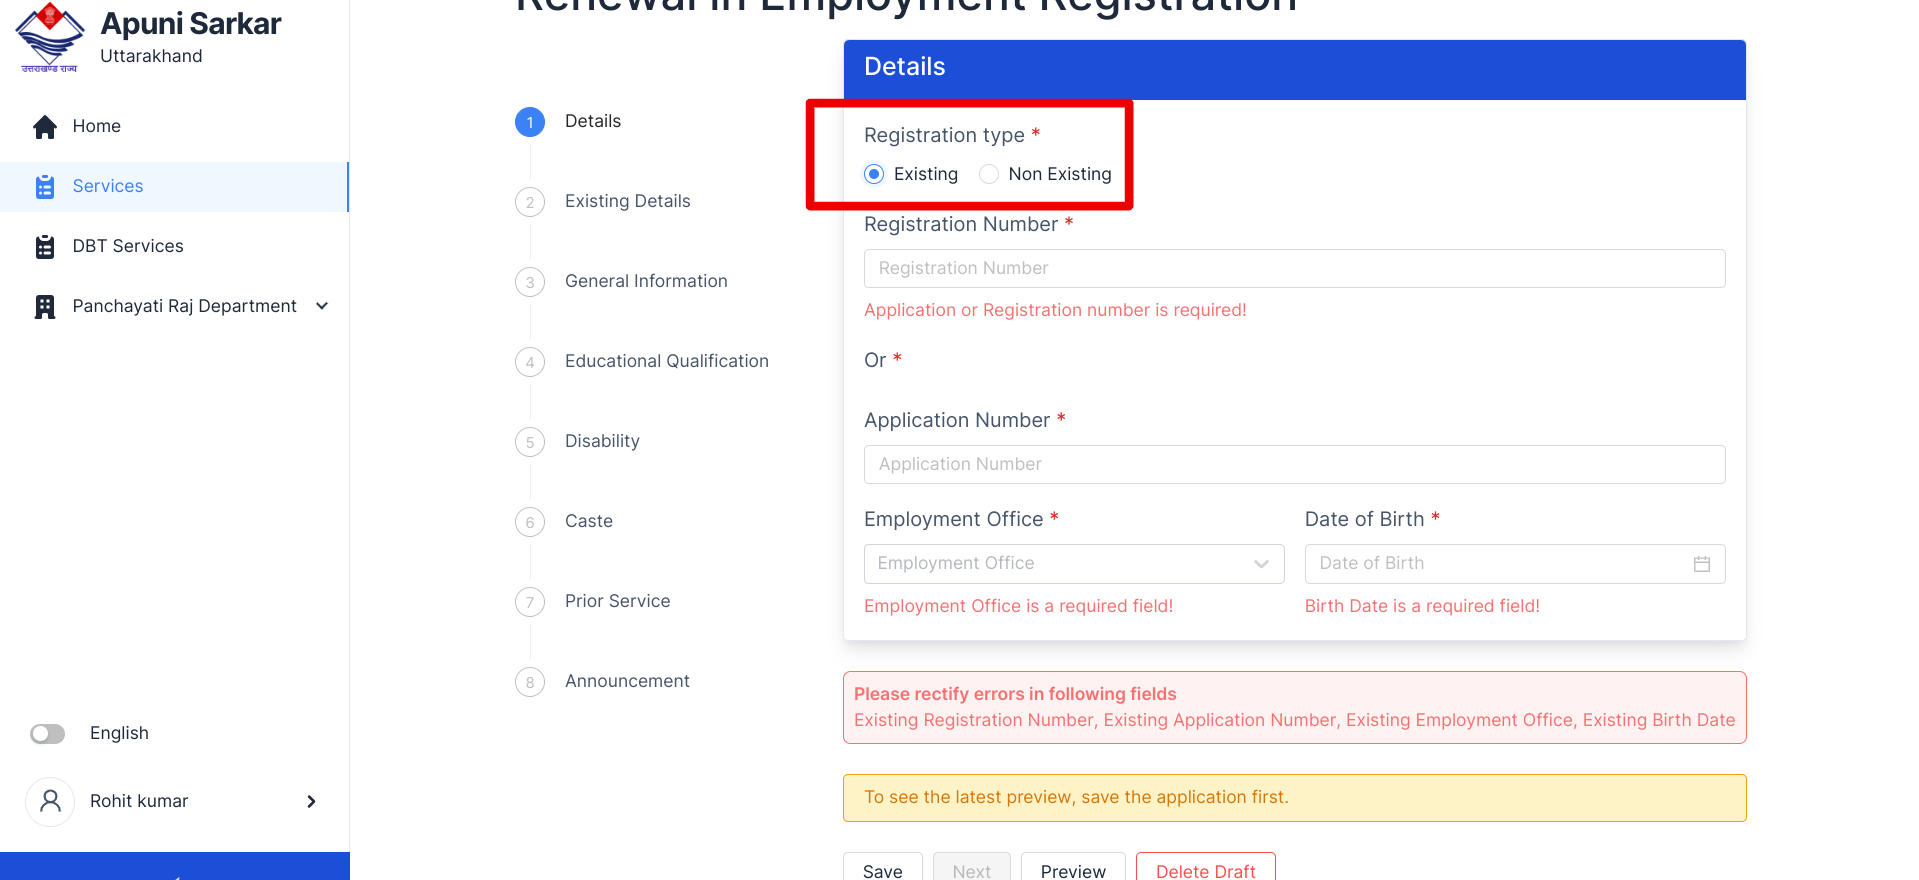 उत्तराखंड रोजगार पंजीकरण नवीनीकरण कैसे करें - Uttarakhand Employment Registration Renewal Online